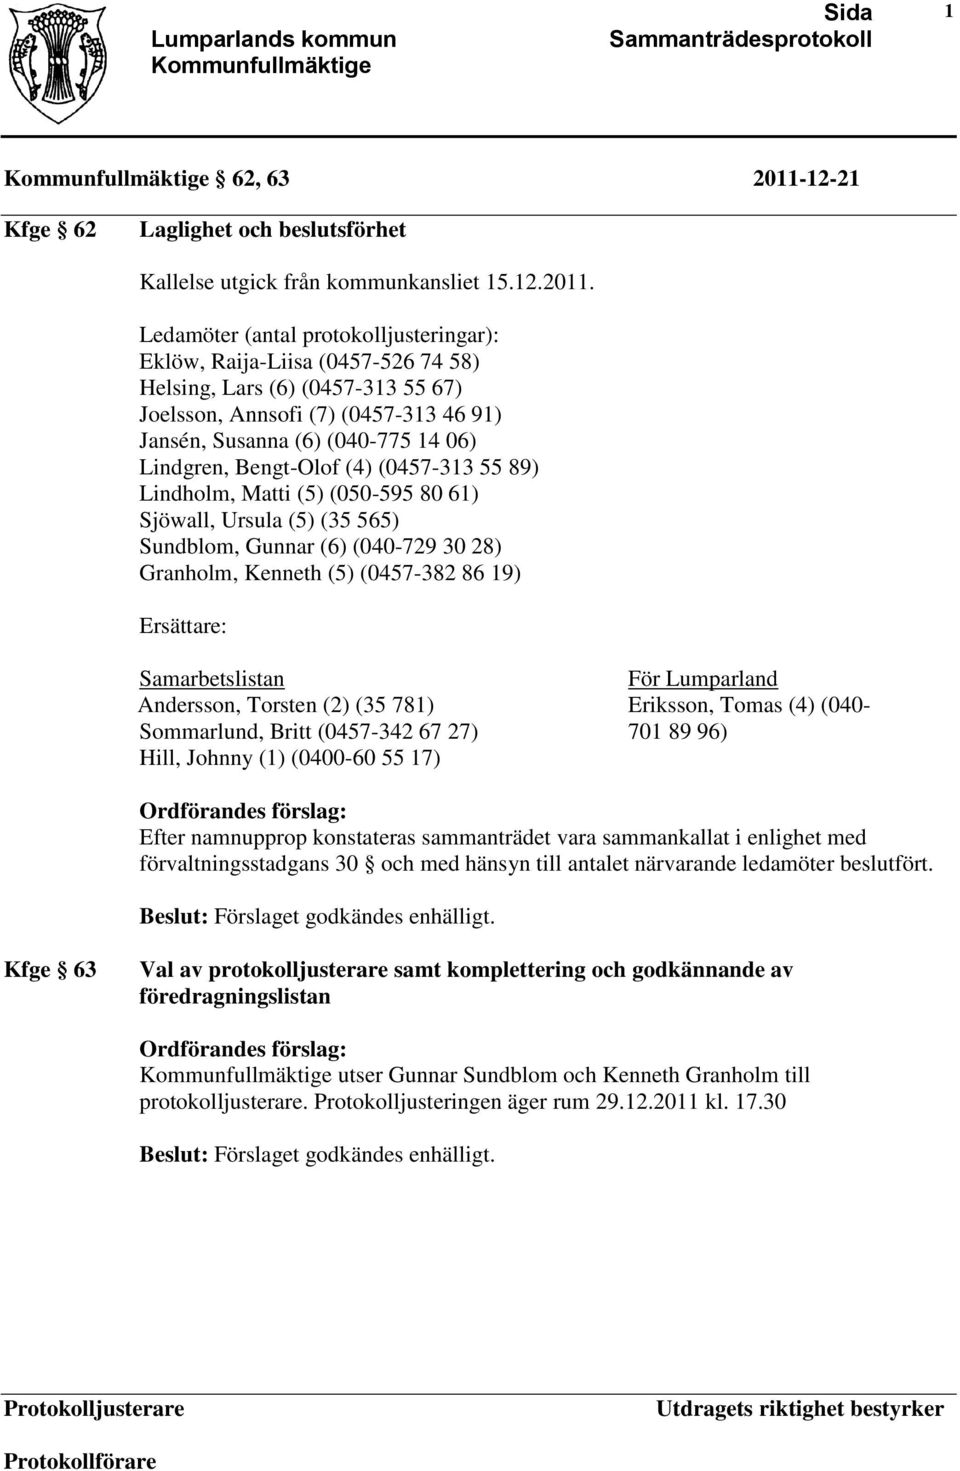 Ledamöter (antal protokolljusteringar): Eklöw, Raija-Liisa (0457-526 74 58) Helsing, Lars (6) (0457-313 55 67) Joelsson, Annsofi (7) (0457-313 46 91) Jansén, Susanna (6) (040-775 14 06) Lindgren,